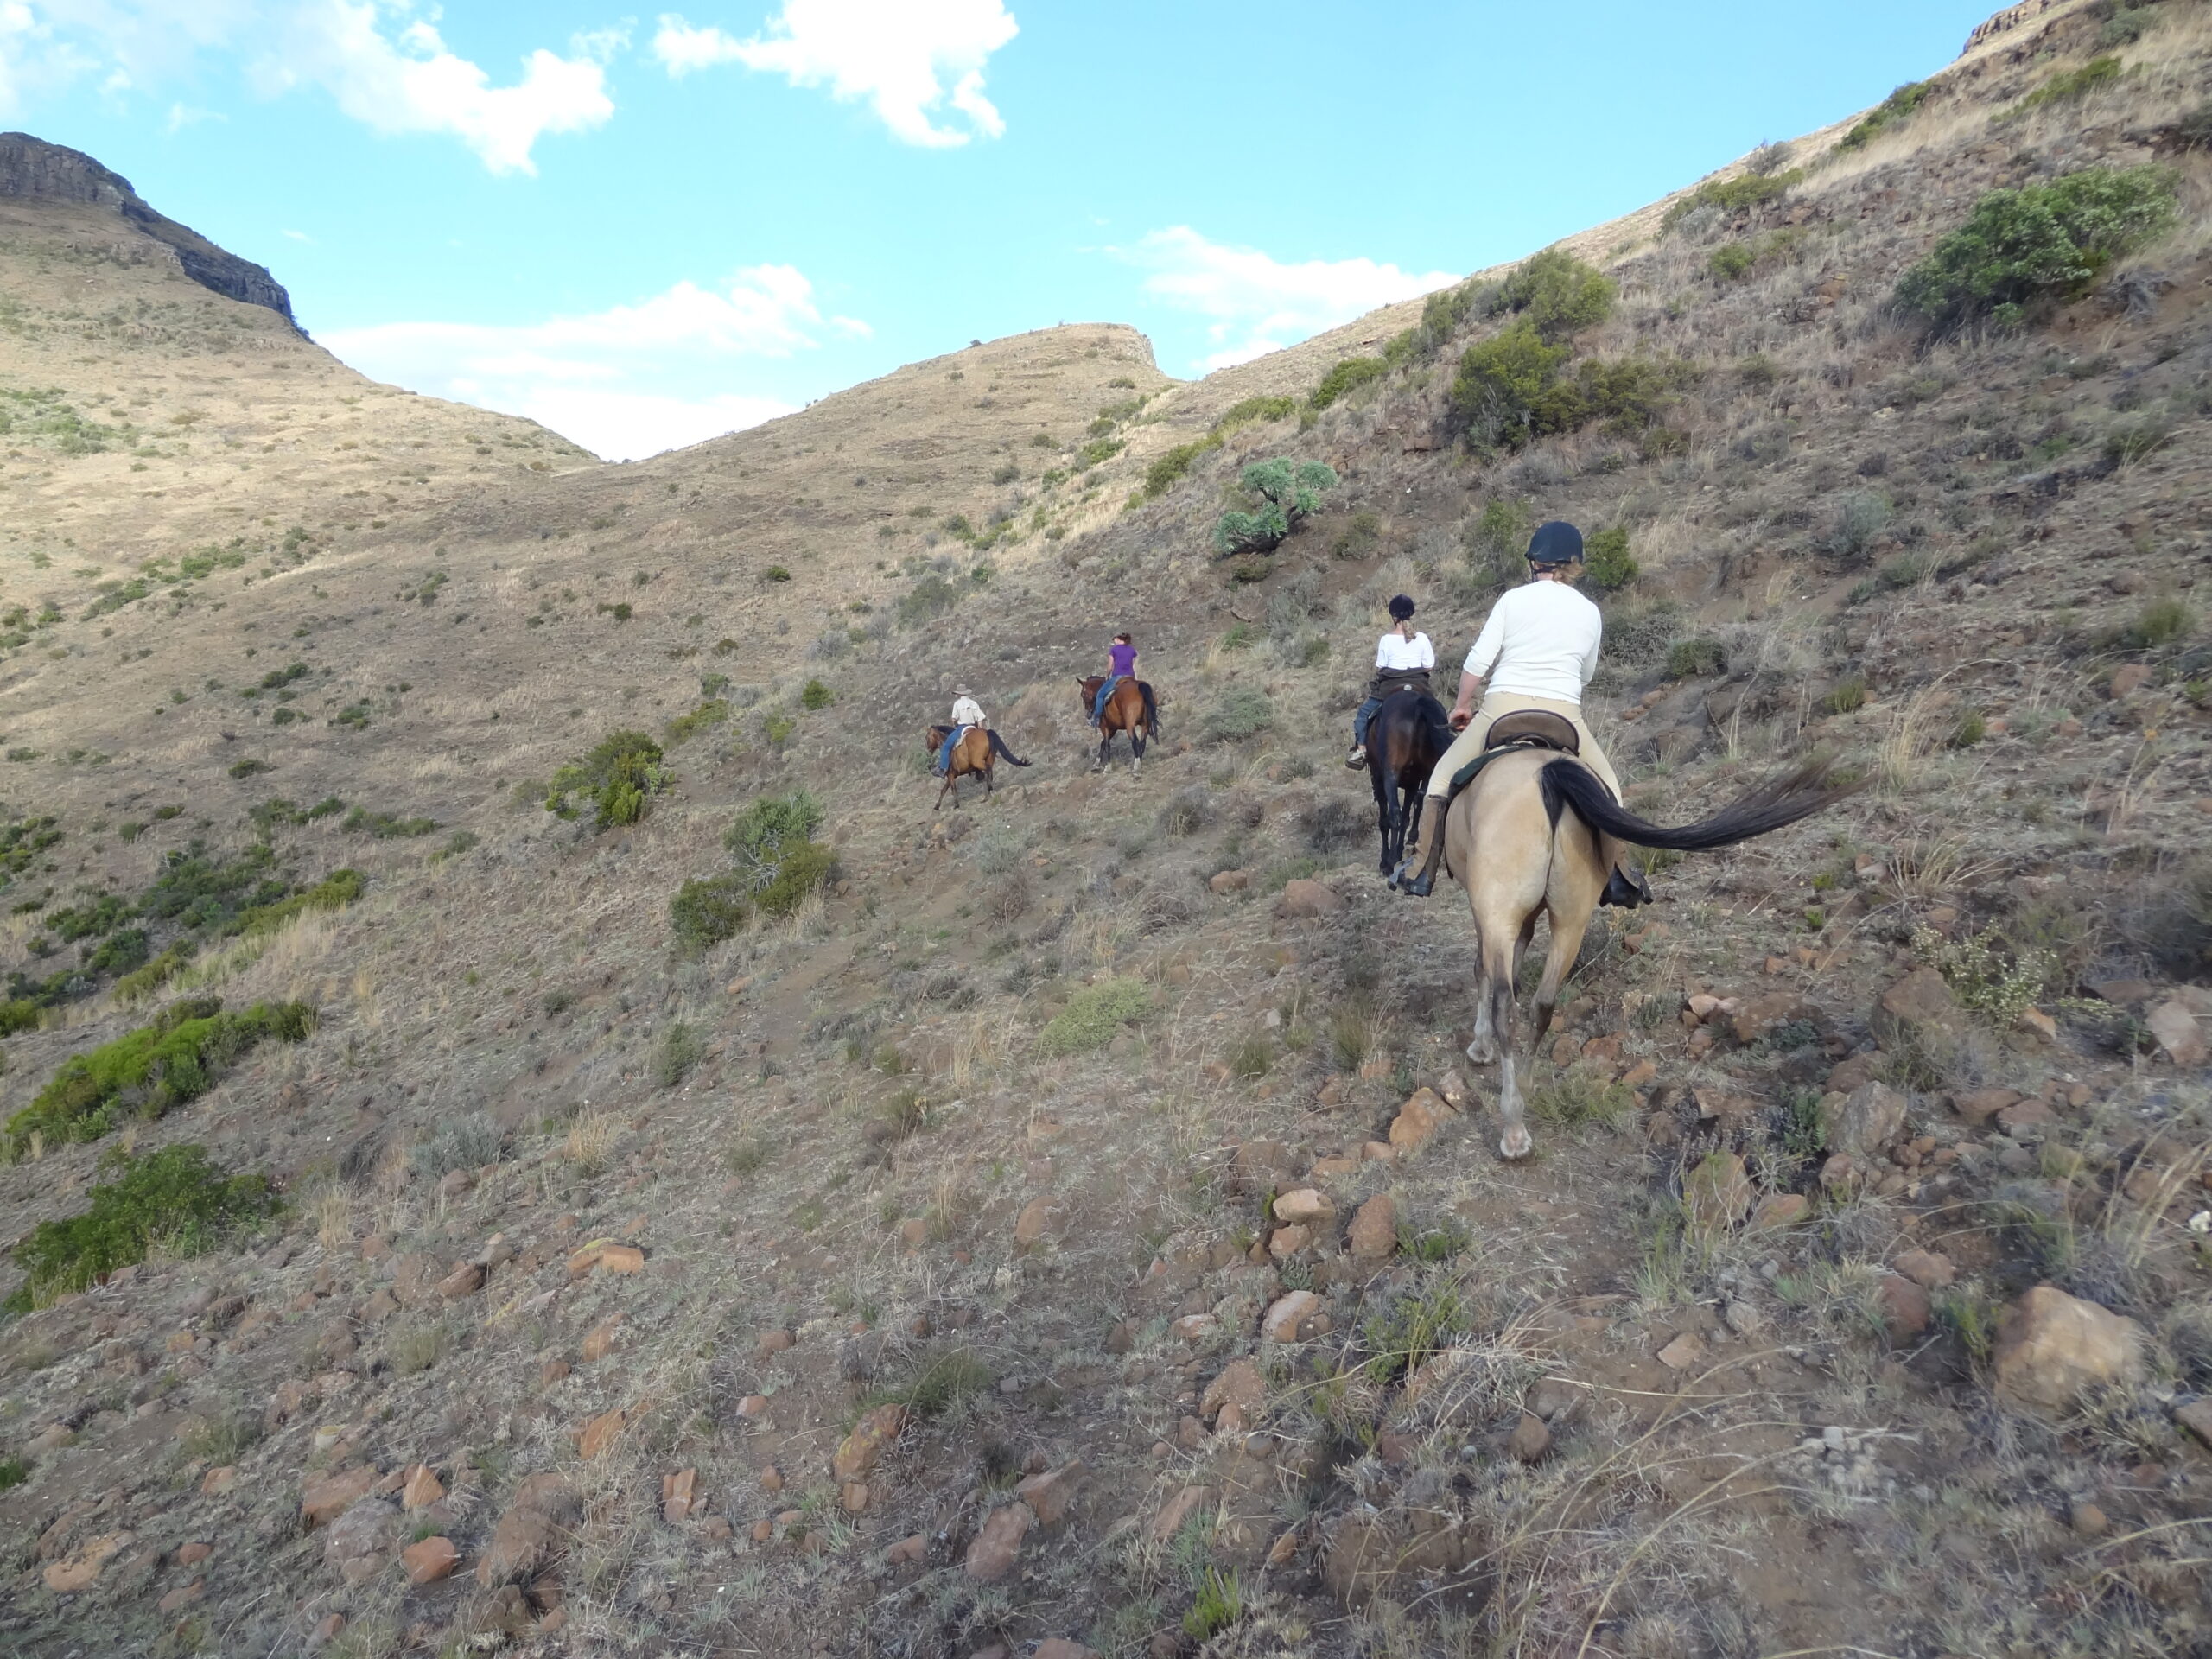 Paardrijden in Moolmanshoek / Zuid Afrika - Vakantie te paard / Reisbureau Perlan